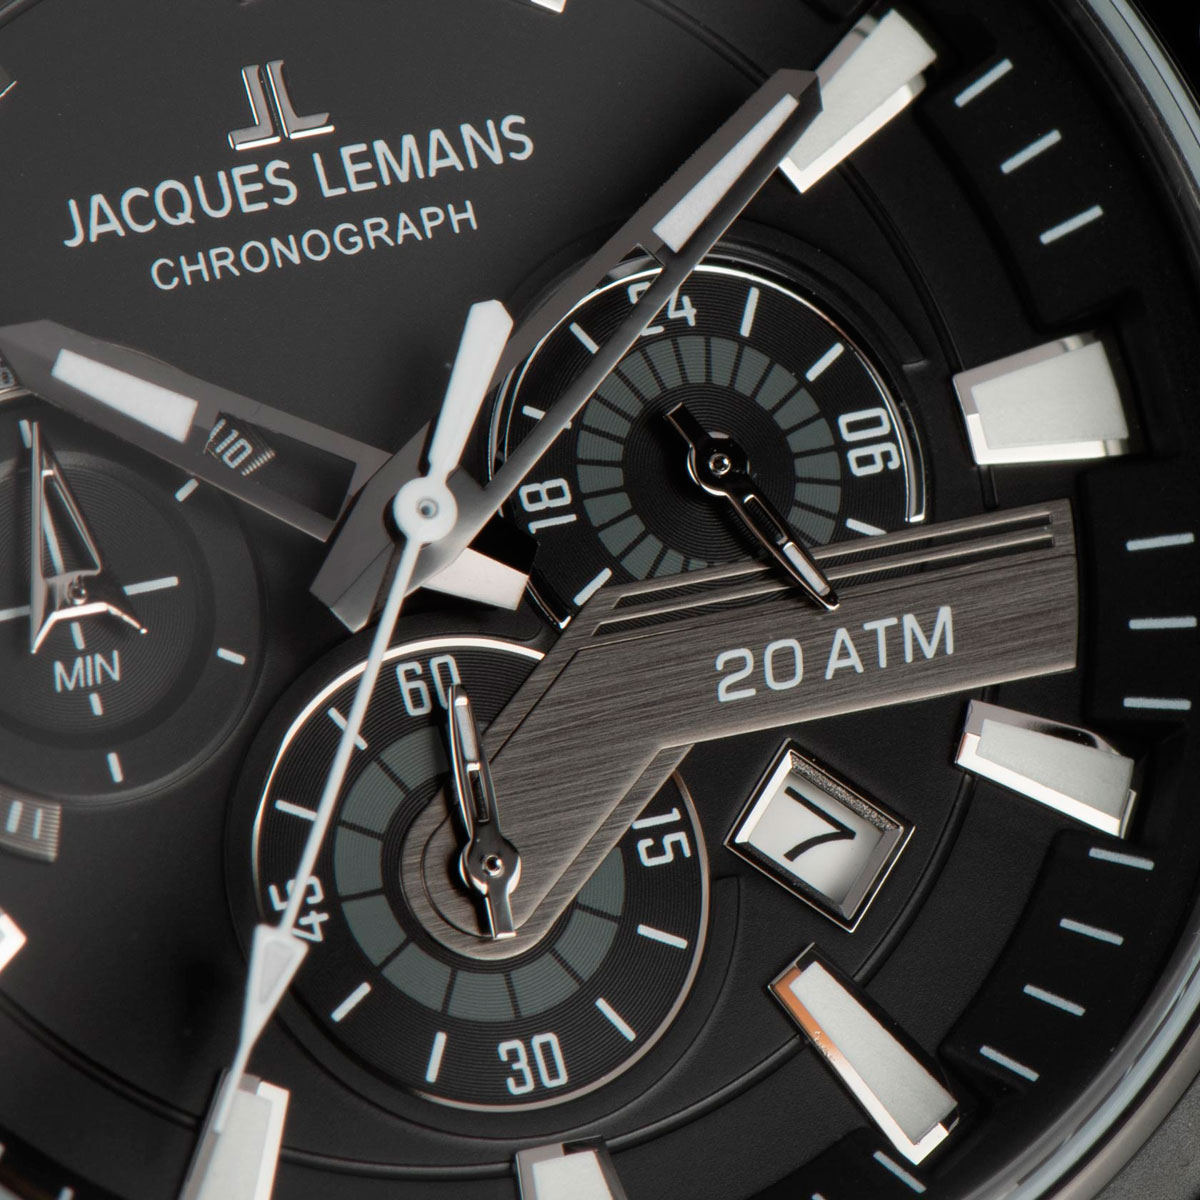 1-2141E, наручные часы руб. в купить Lemans цене 43050 Jacques по с доставкой